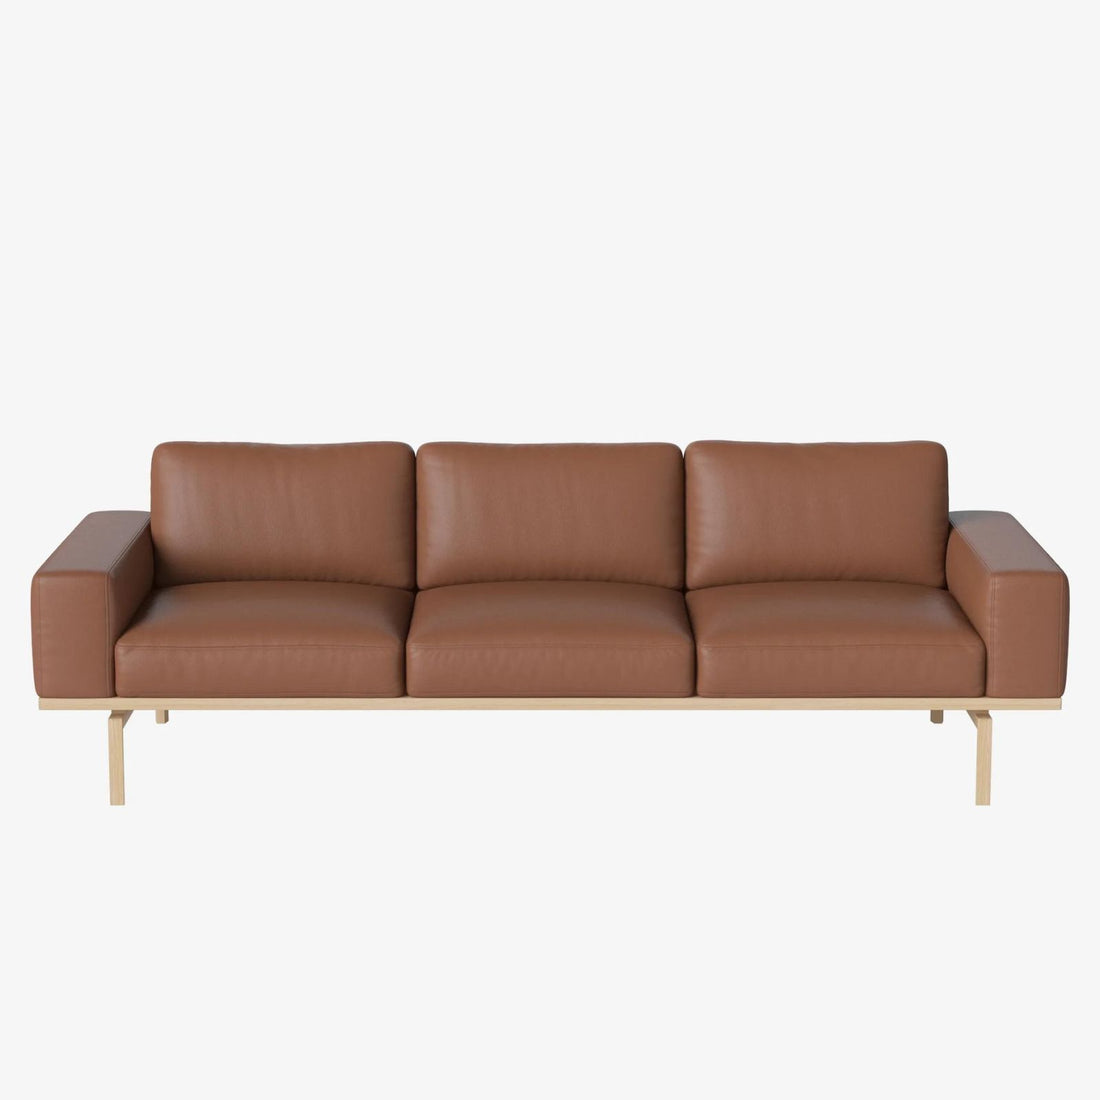 Elton | Sofa 3 seater